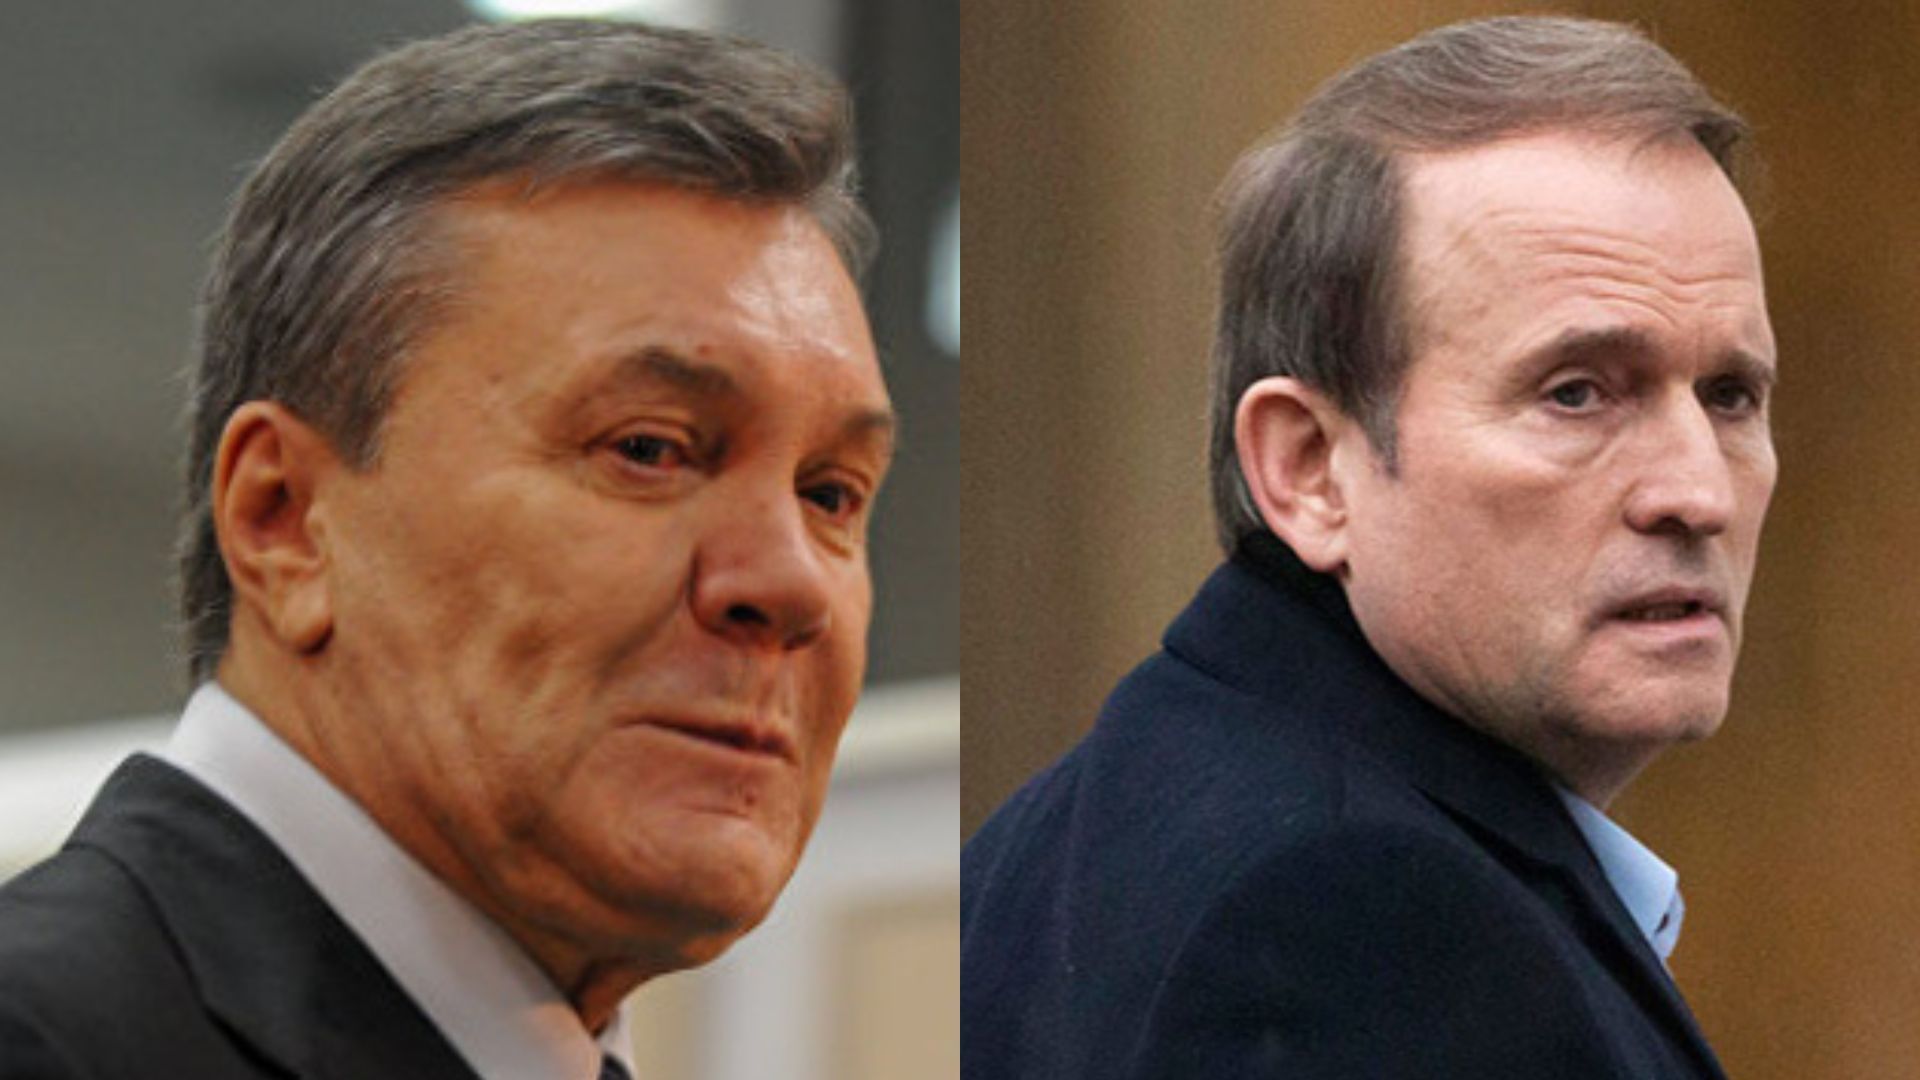 Під час Майдану Янукович спілкувався з Медведчуком російським номером - 24 Канал